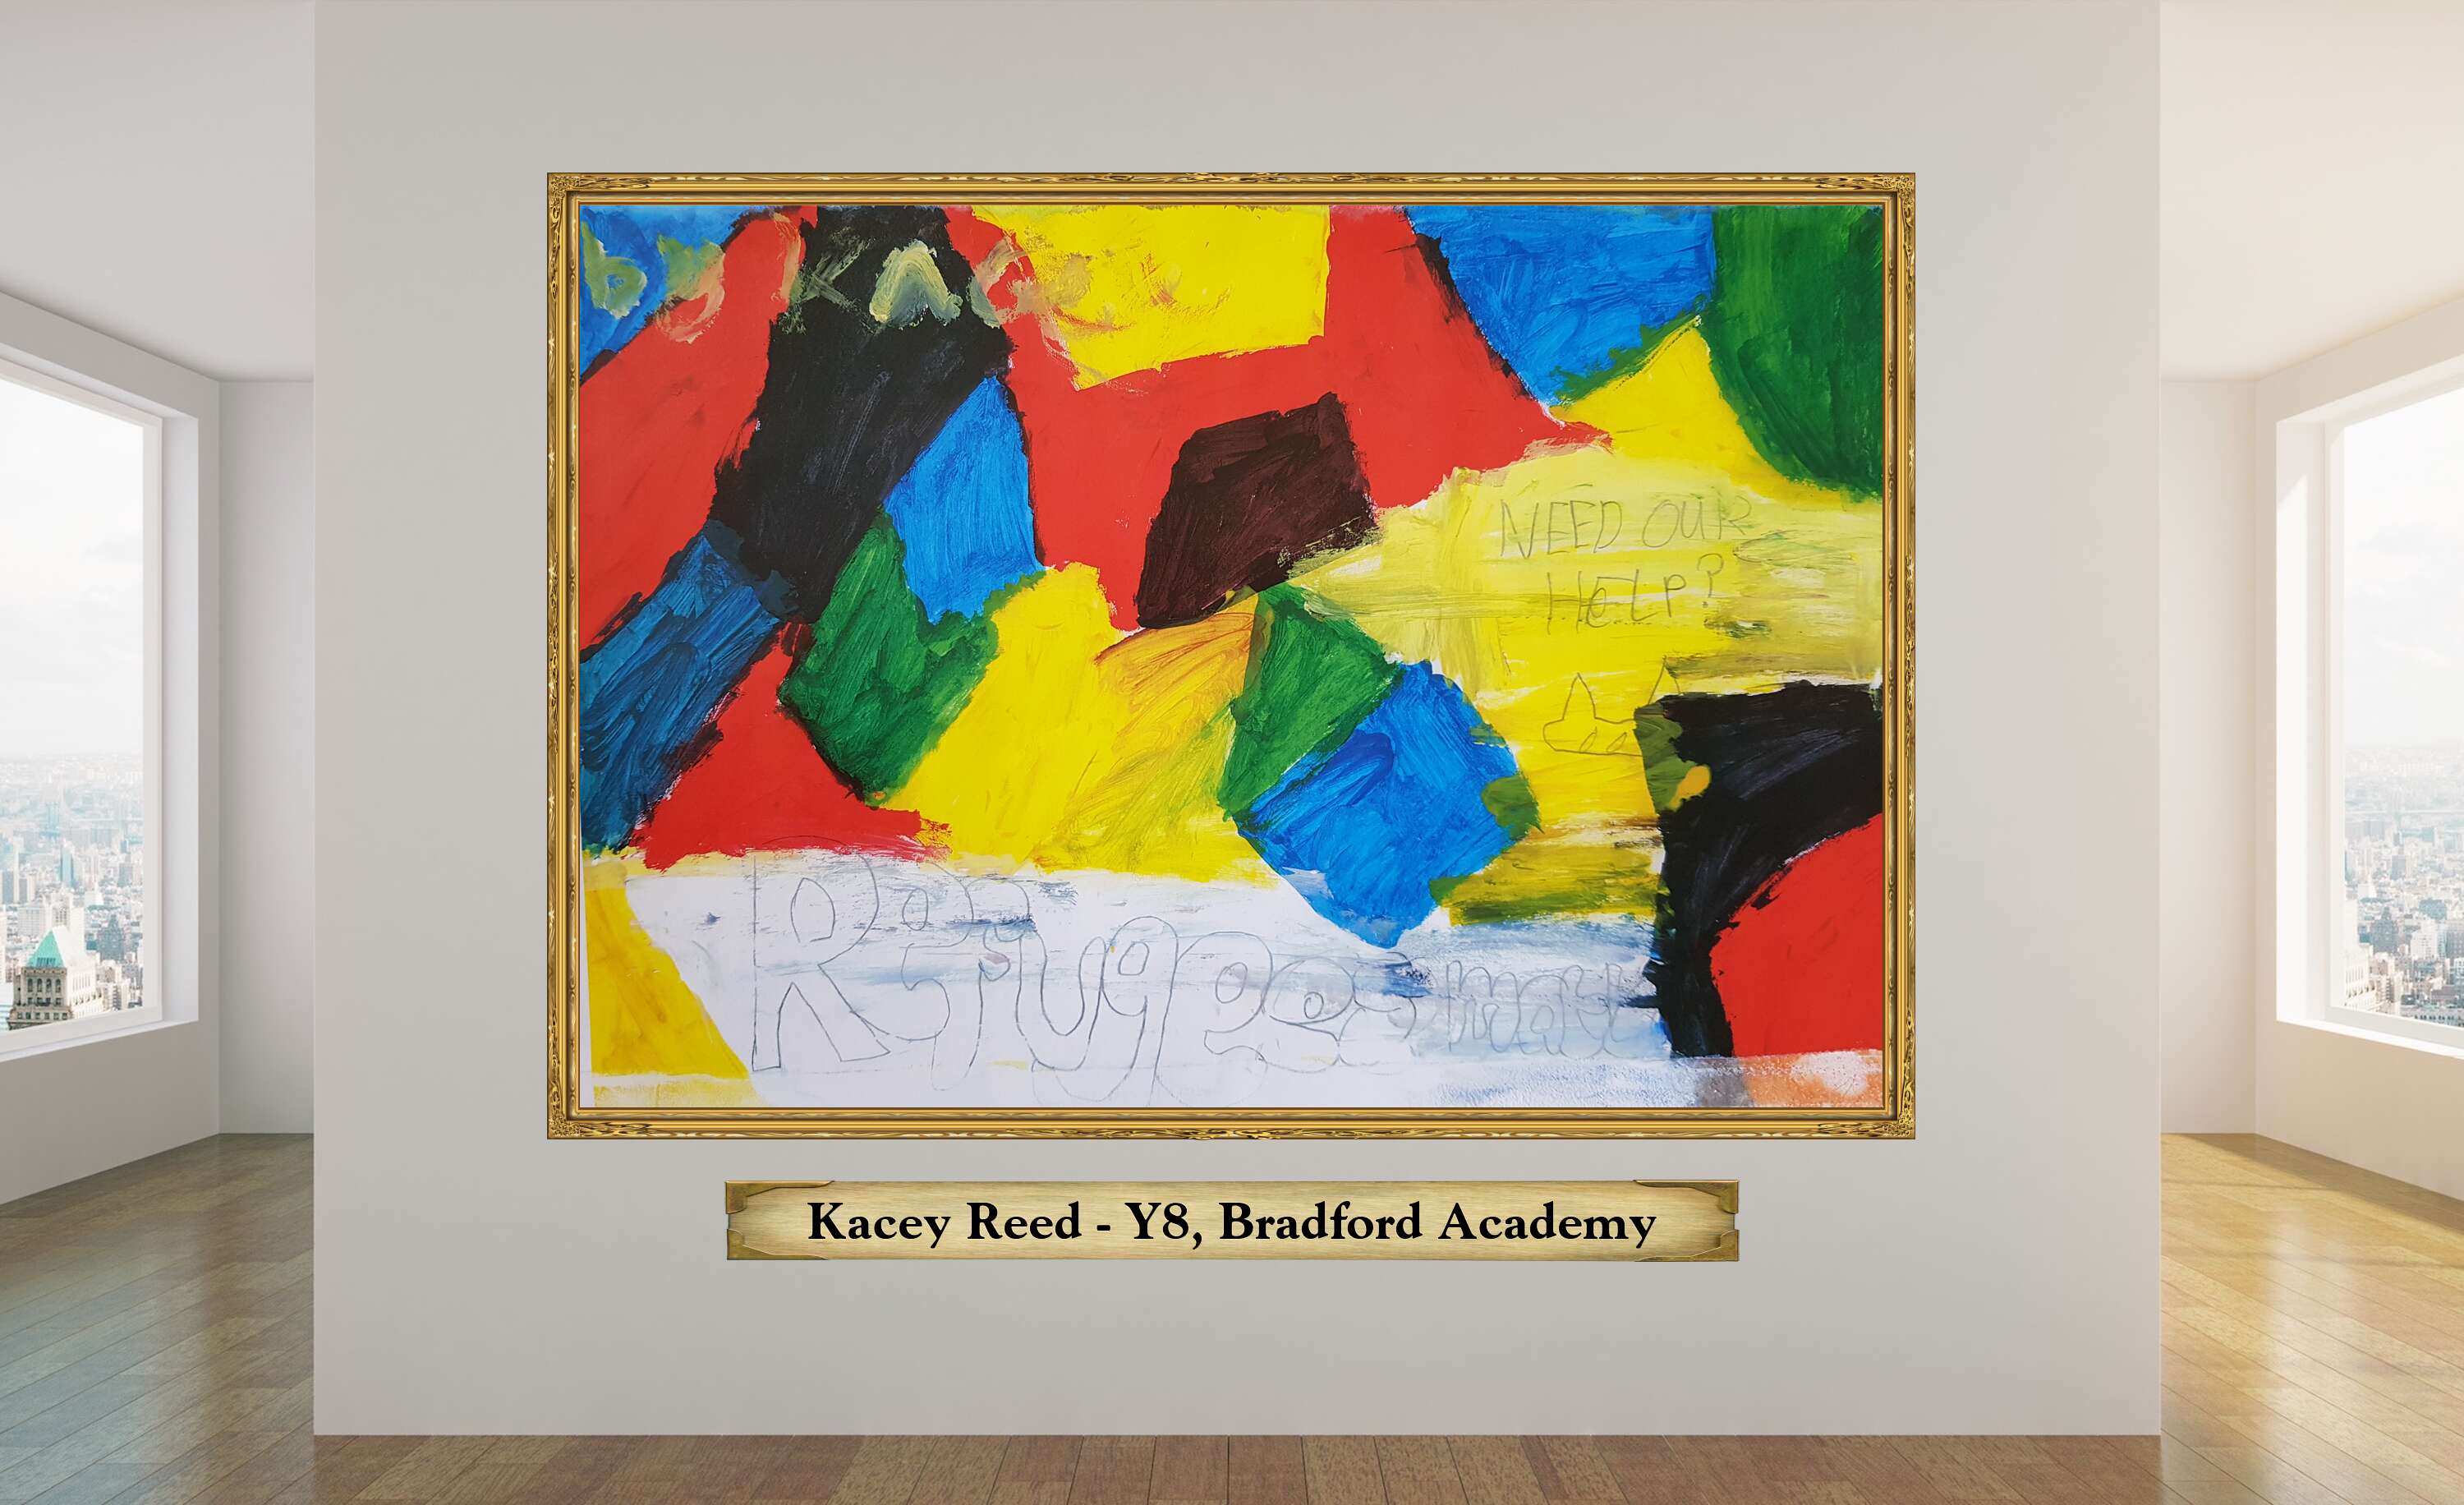 Kacey Reed - Y8, Bradford Academy